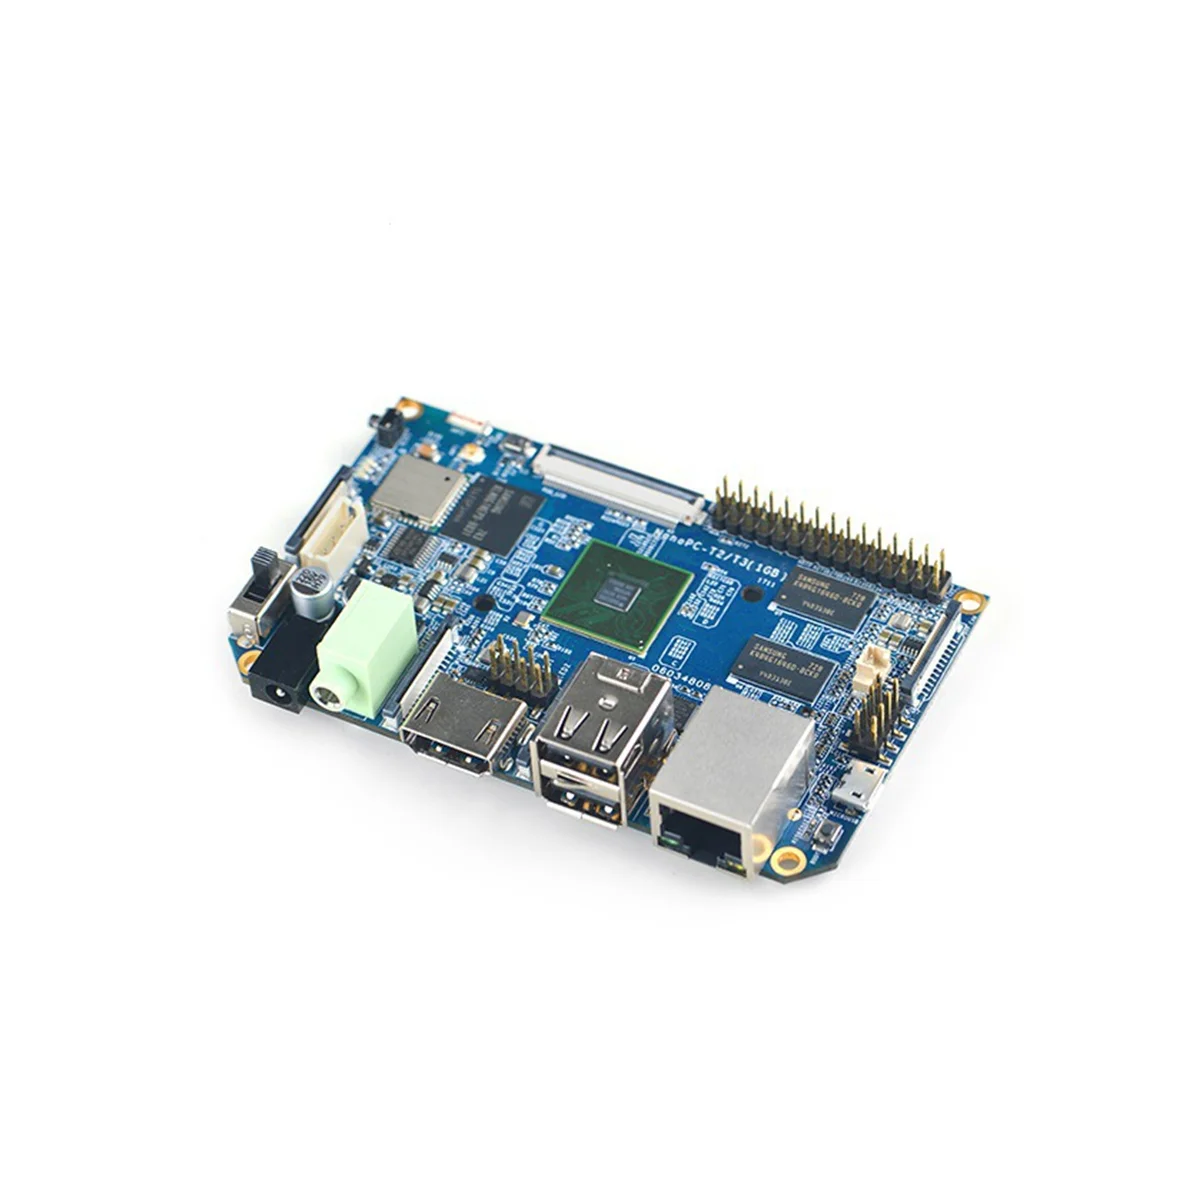 

For Nanopc-T2 Development Board S5P4418 Quad Core Cortex-A9 1GB DDR3 RAM Wifi Bluetooth A9 Card Support Ubuntu